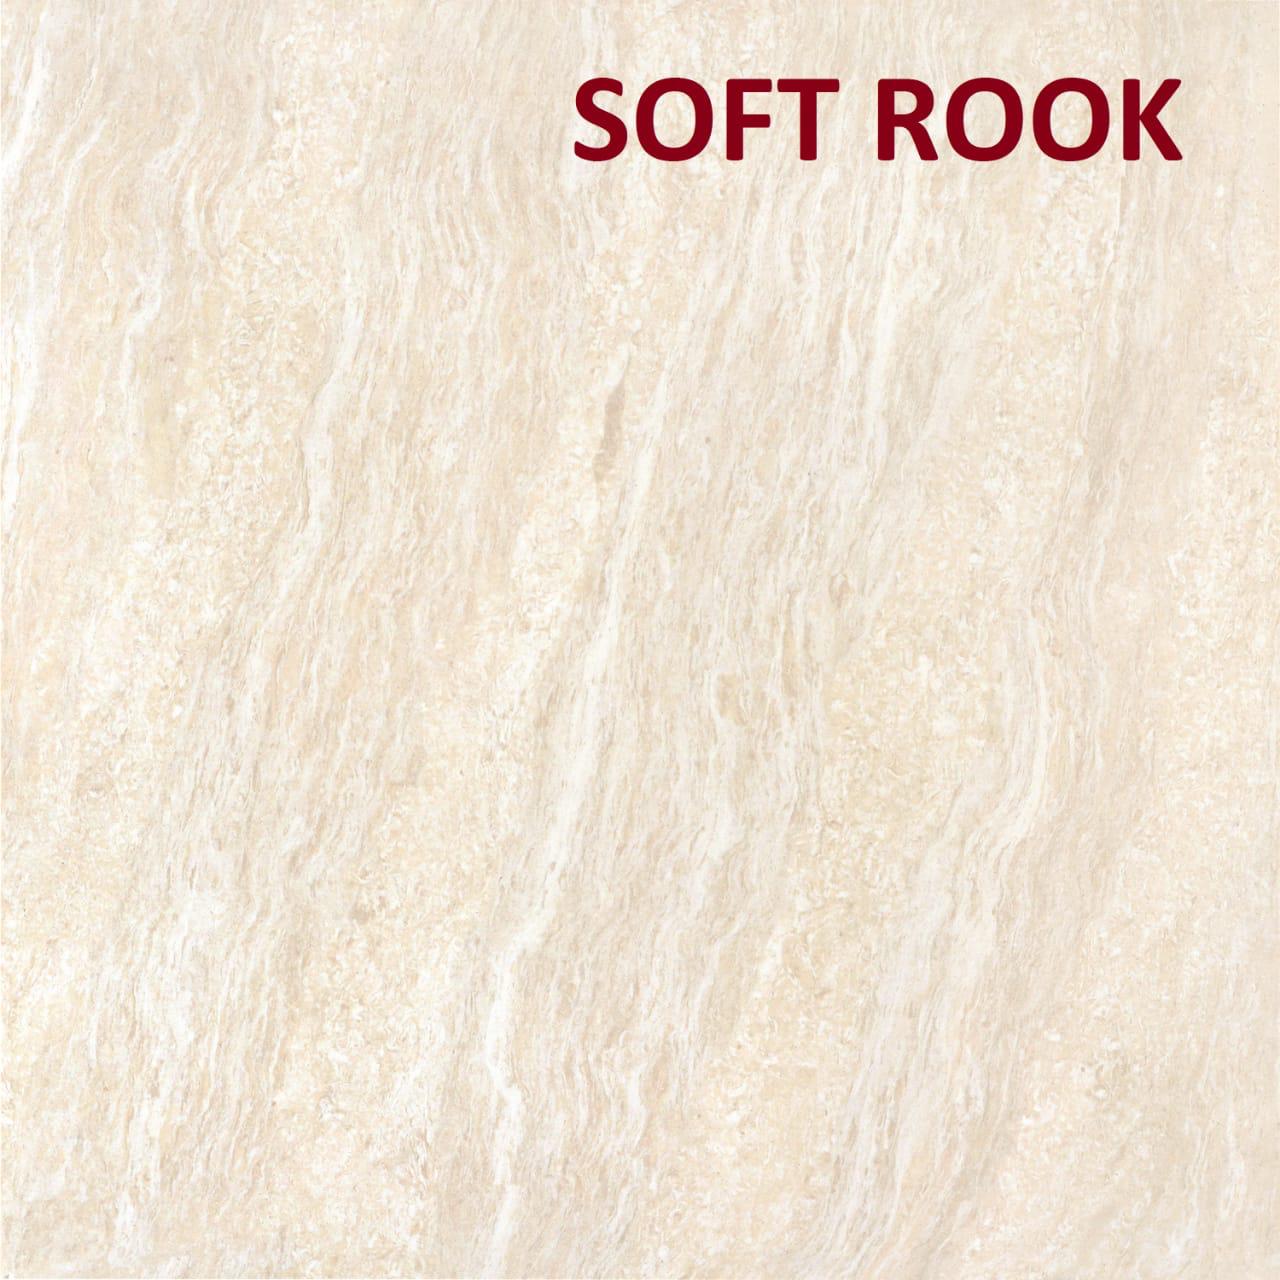 Soft Rook